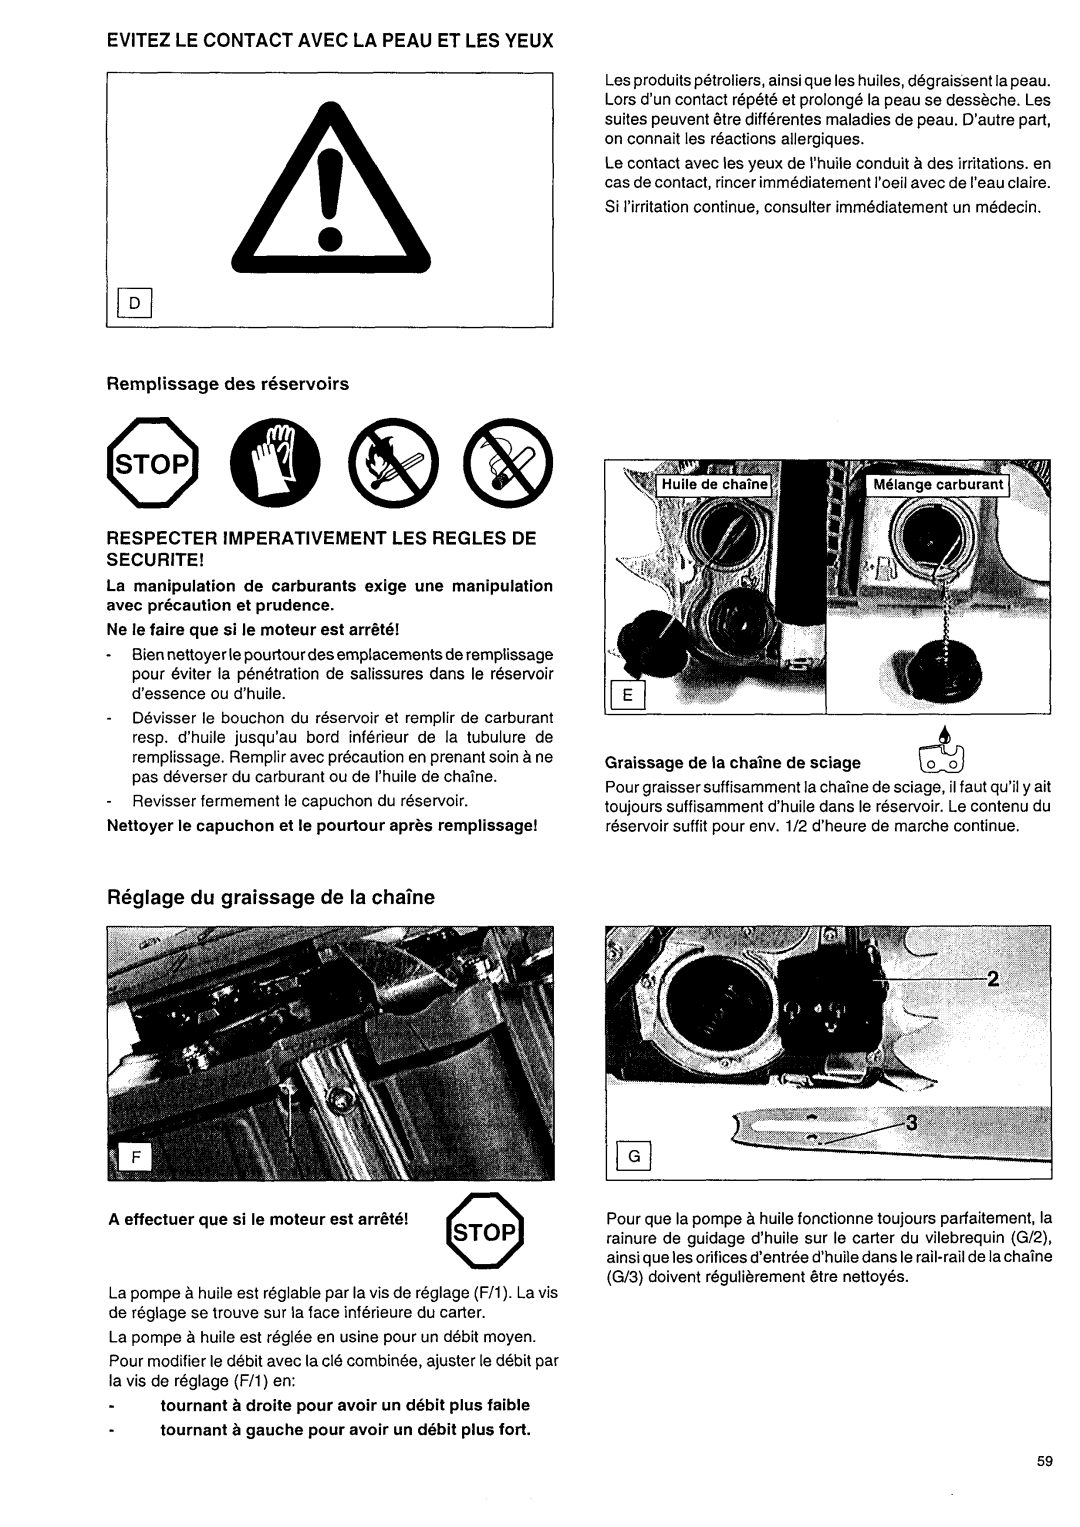 Makita DCS 9000 manual Evitez Le Contact Avec La Peau Et Les Yeux, Respecter Imperativementles Regles De Securite 